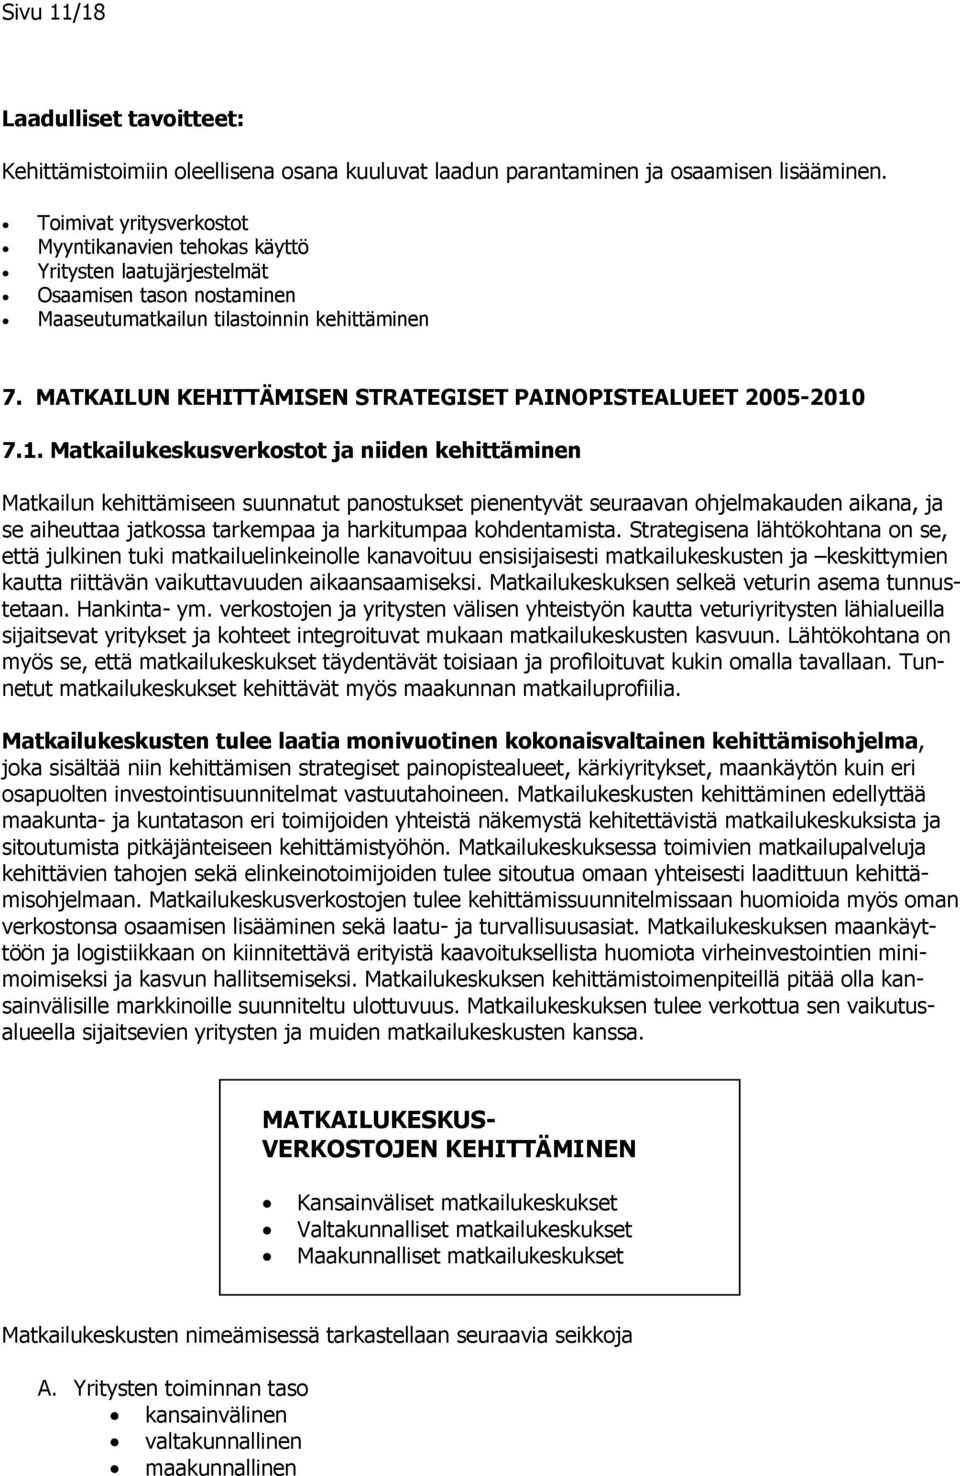 MATKAILUN KEHITTÄMISEN STRATEGISET PAINOPISTEALUEET 2005-2010